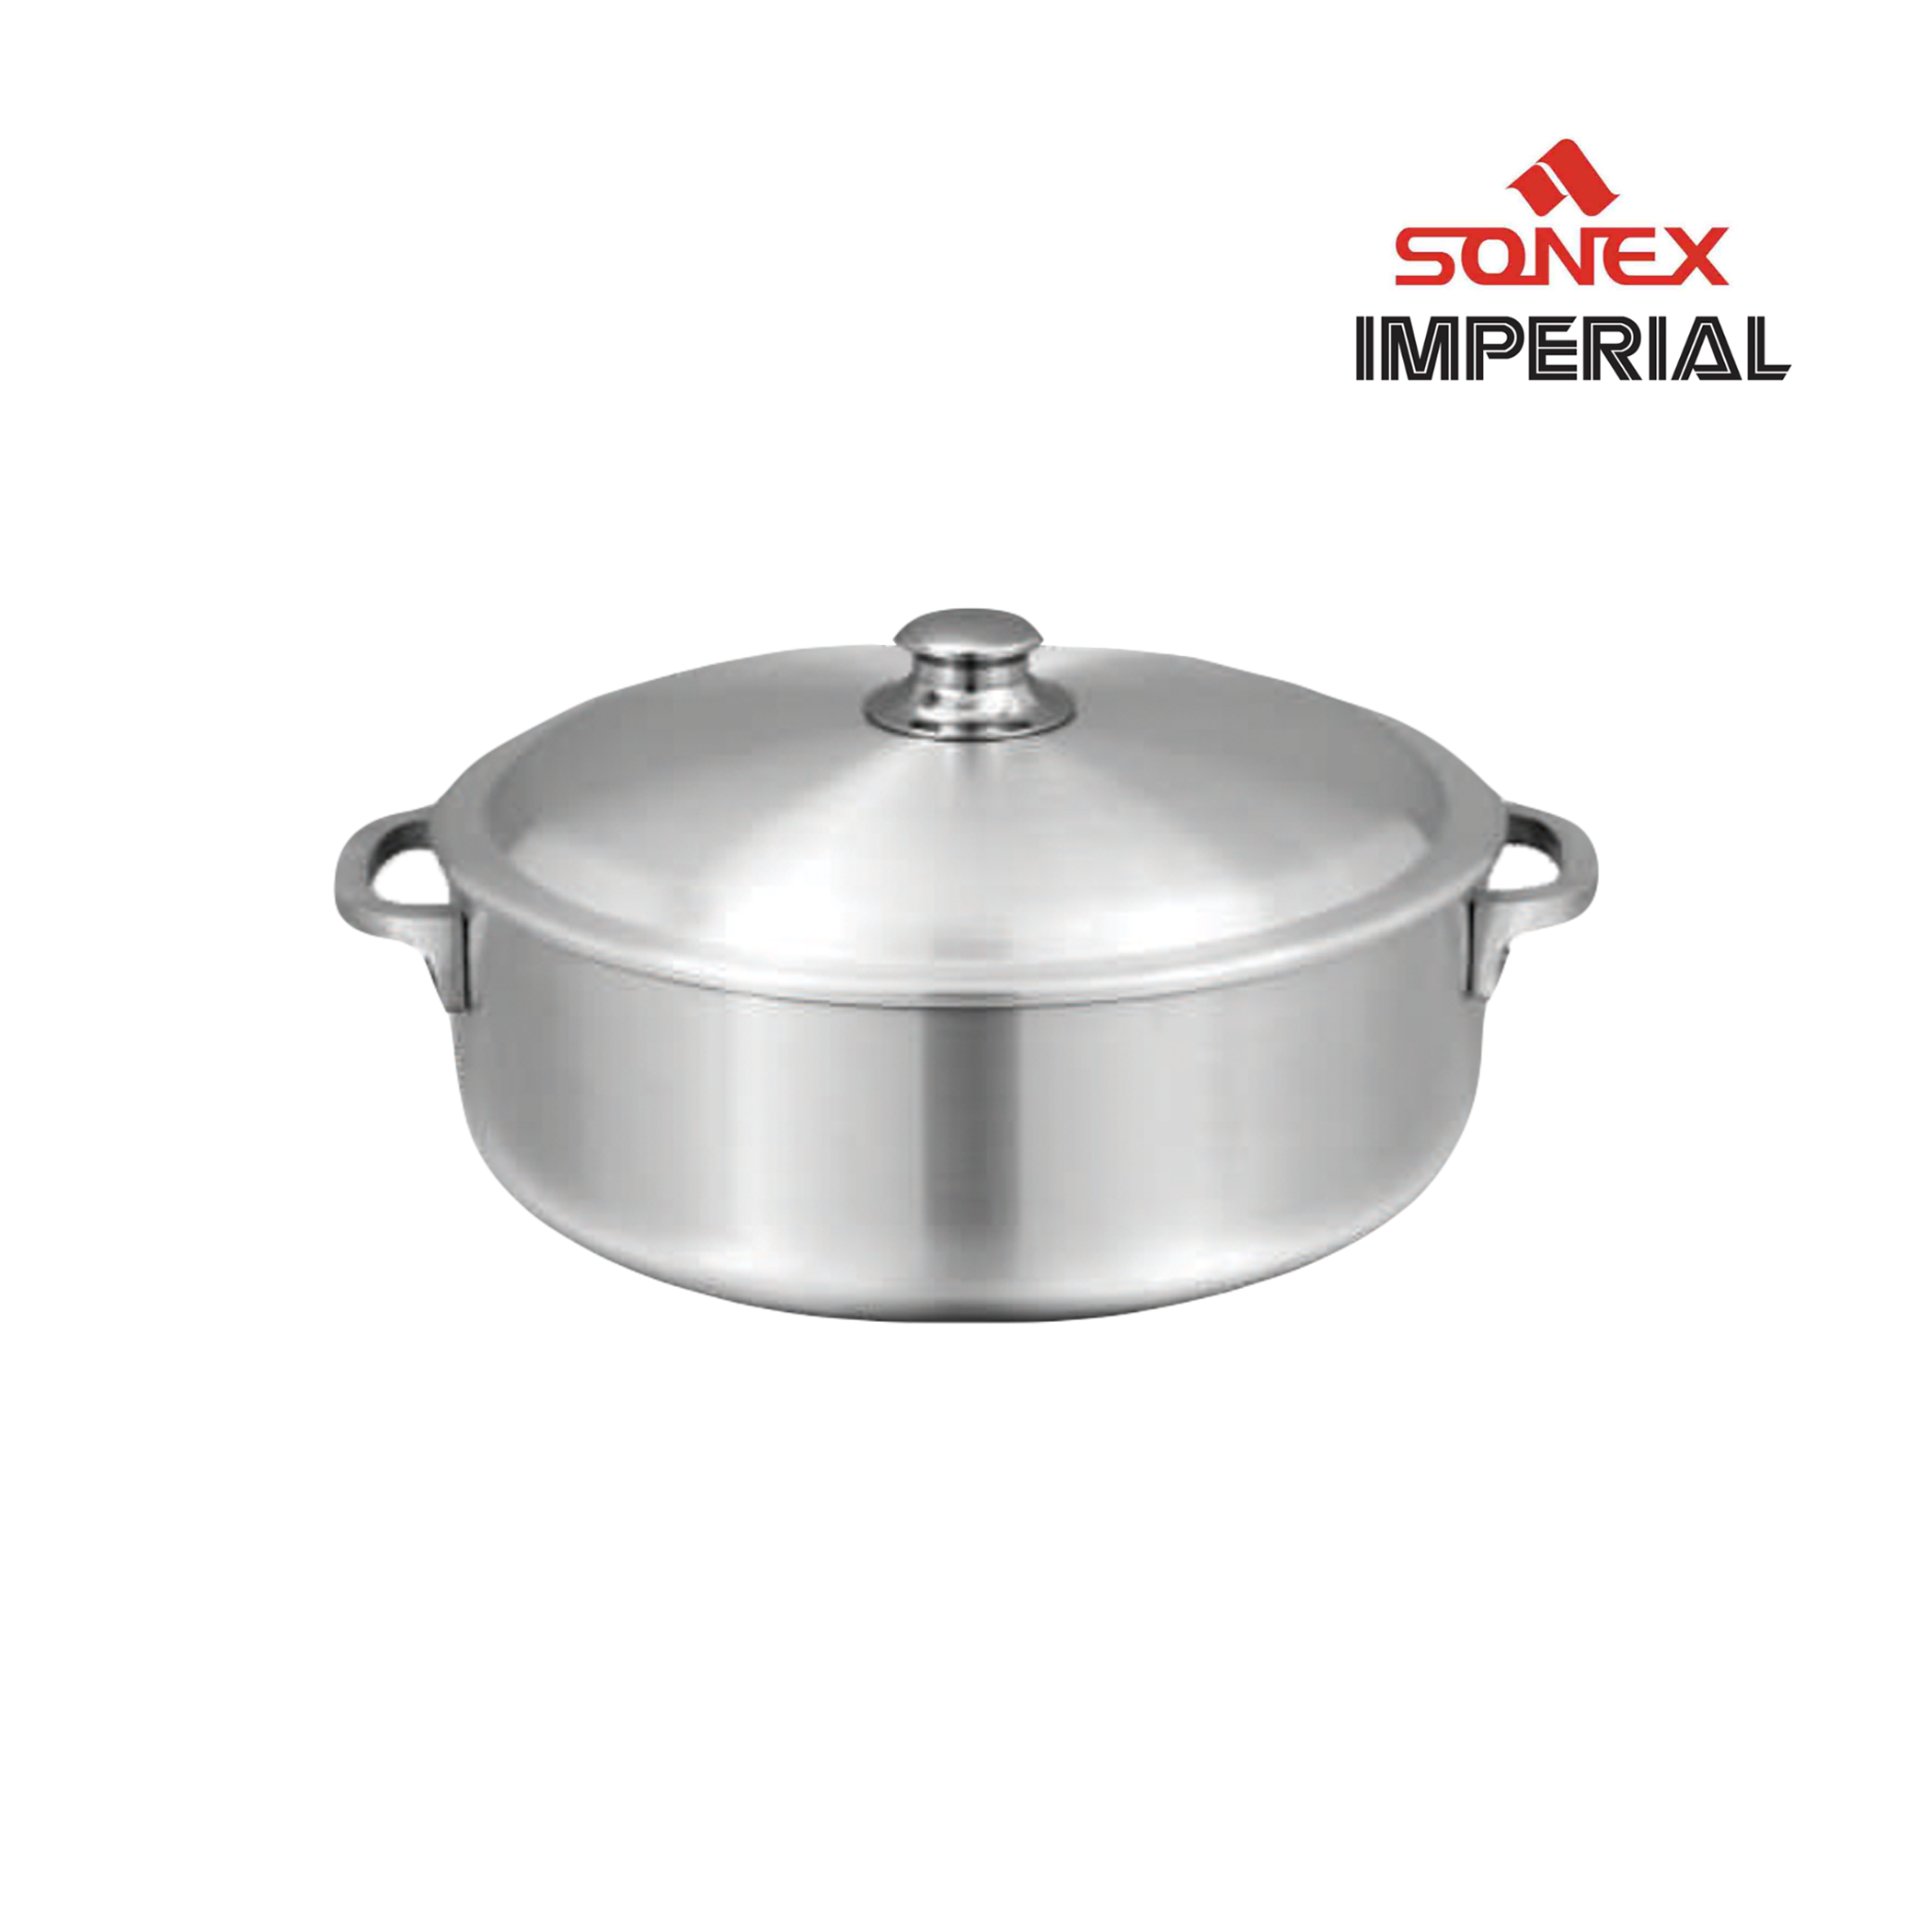 Sonex Imperial Aluminum 4Pc Set